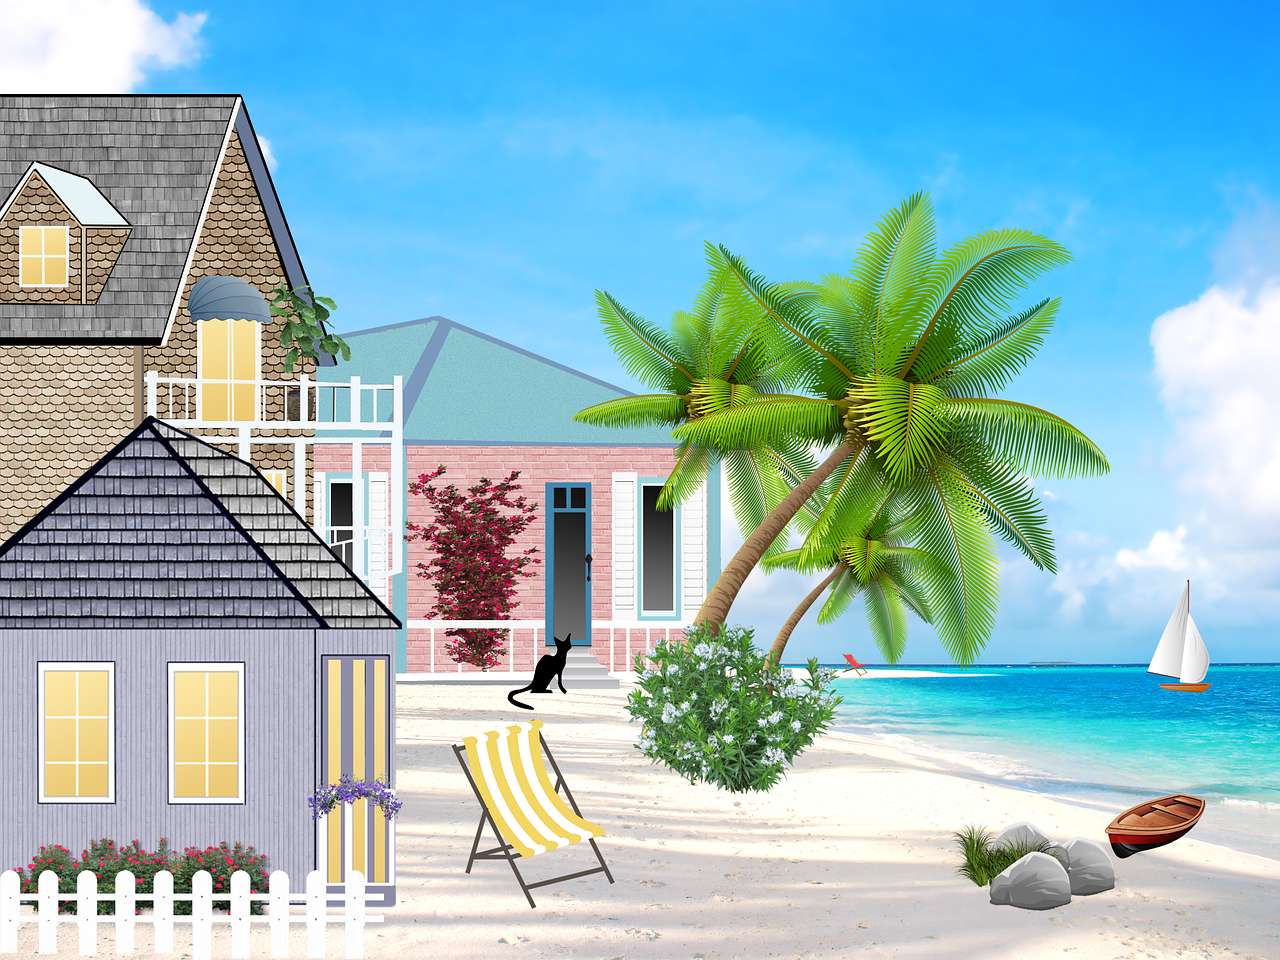 Case de vacanță lângă plajă puzzle online